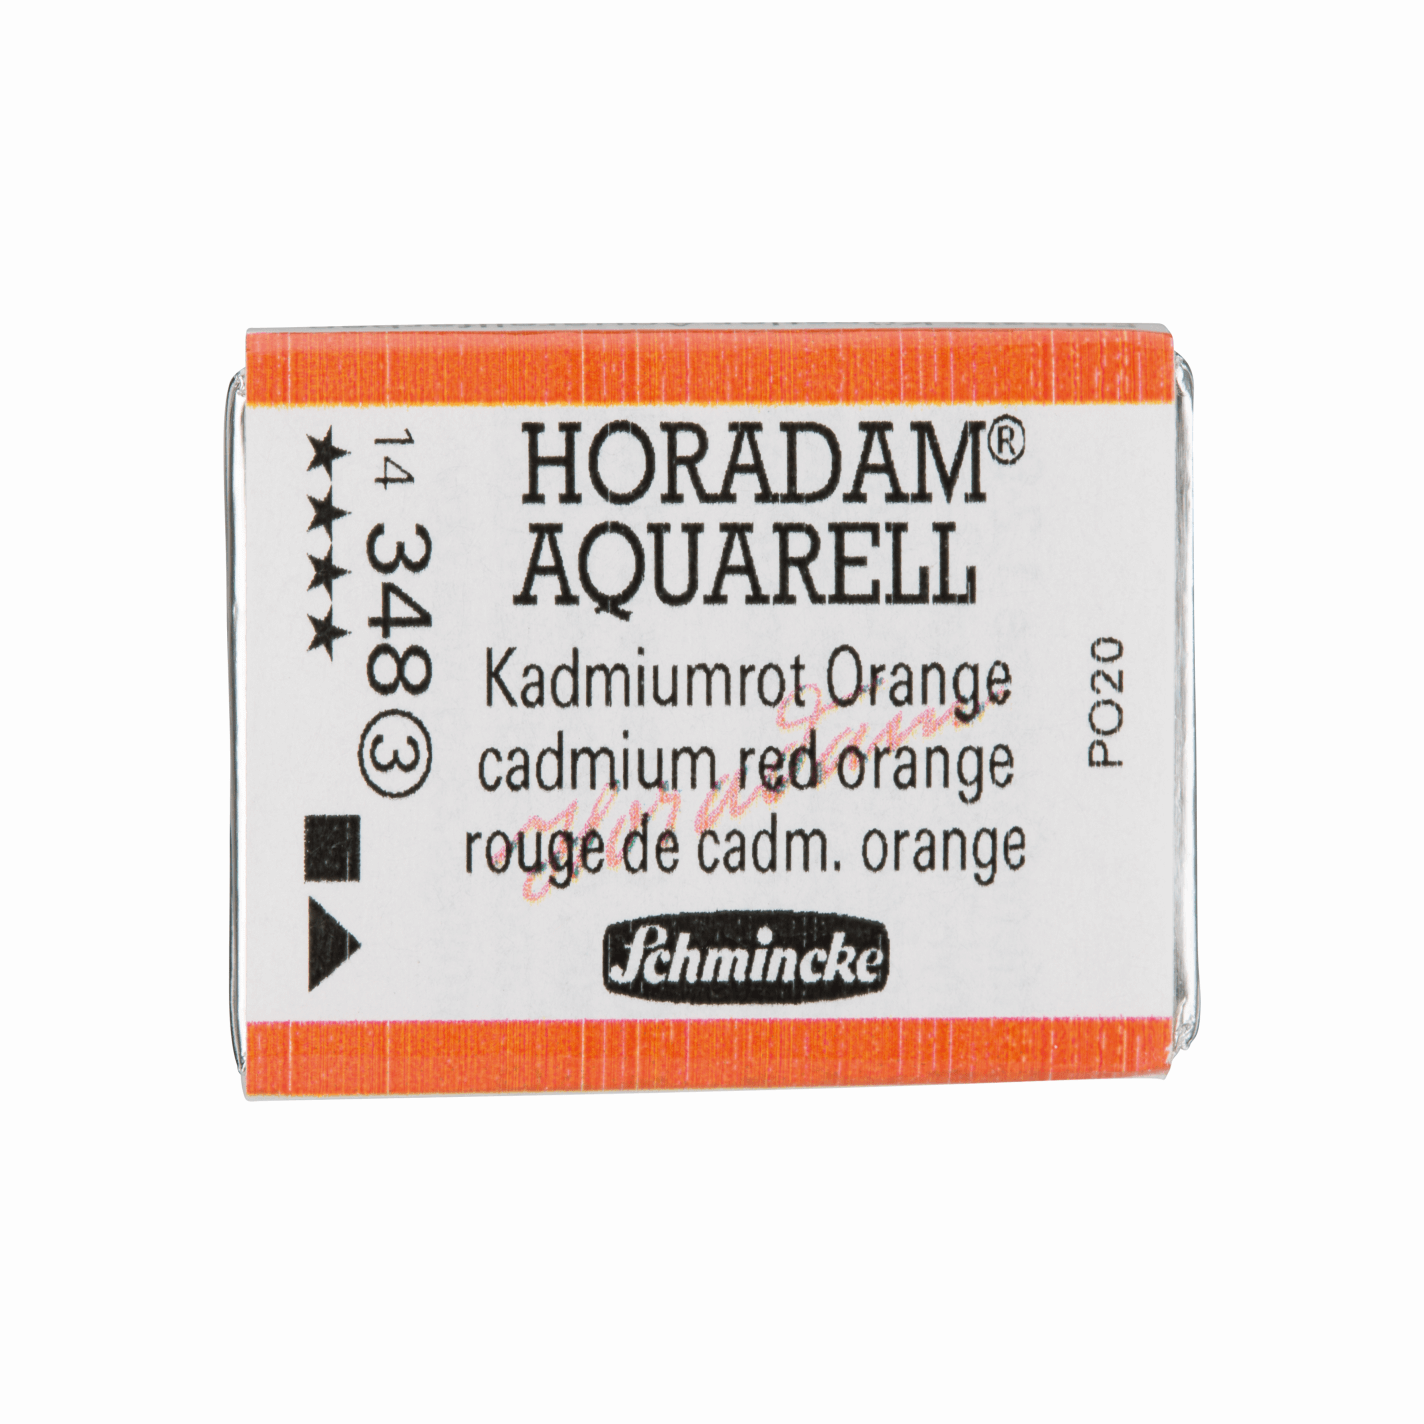 Schmincke Horadam Aquarell pans 1/1 pan Cadmium Red Orange